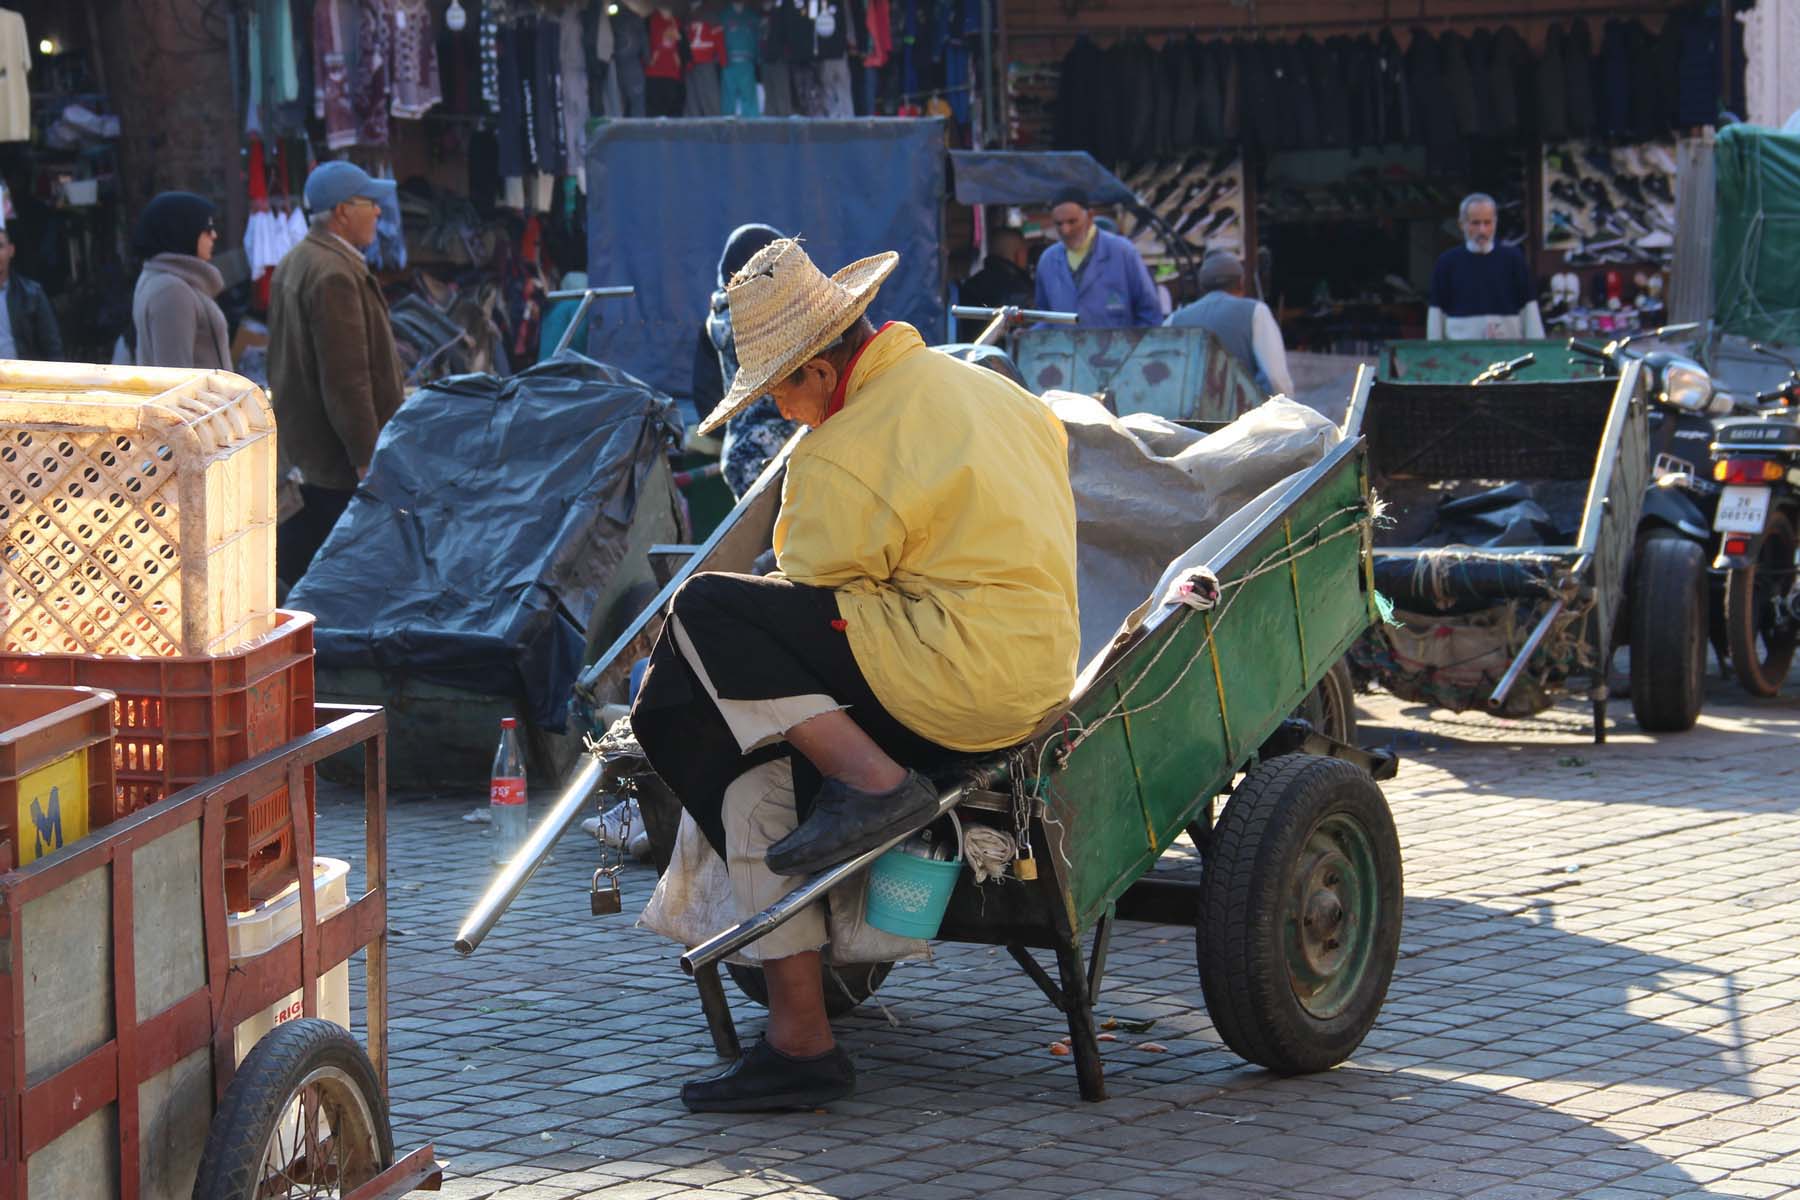 Street vendor in Marrakech Jemaa el-Fnaa